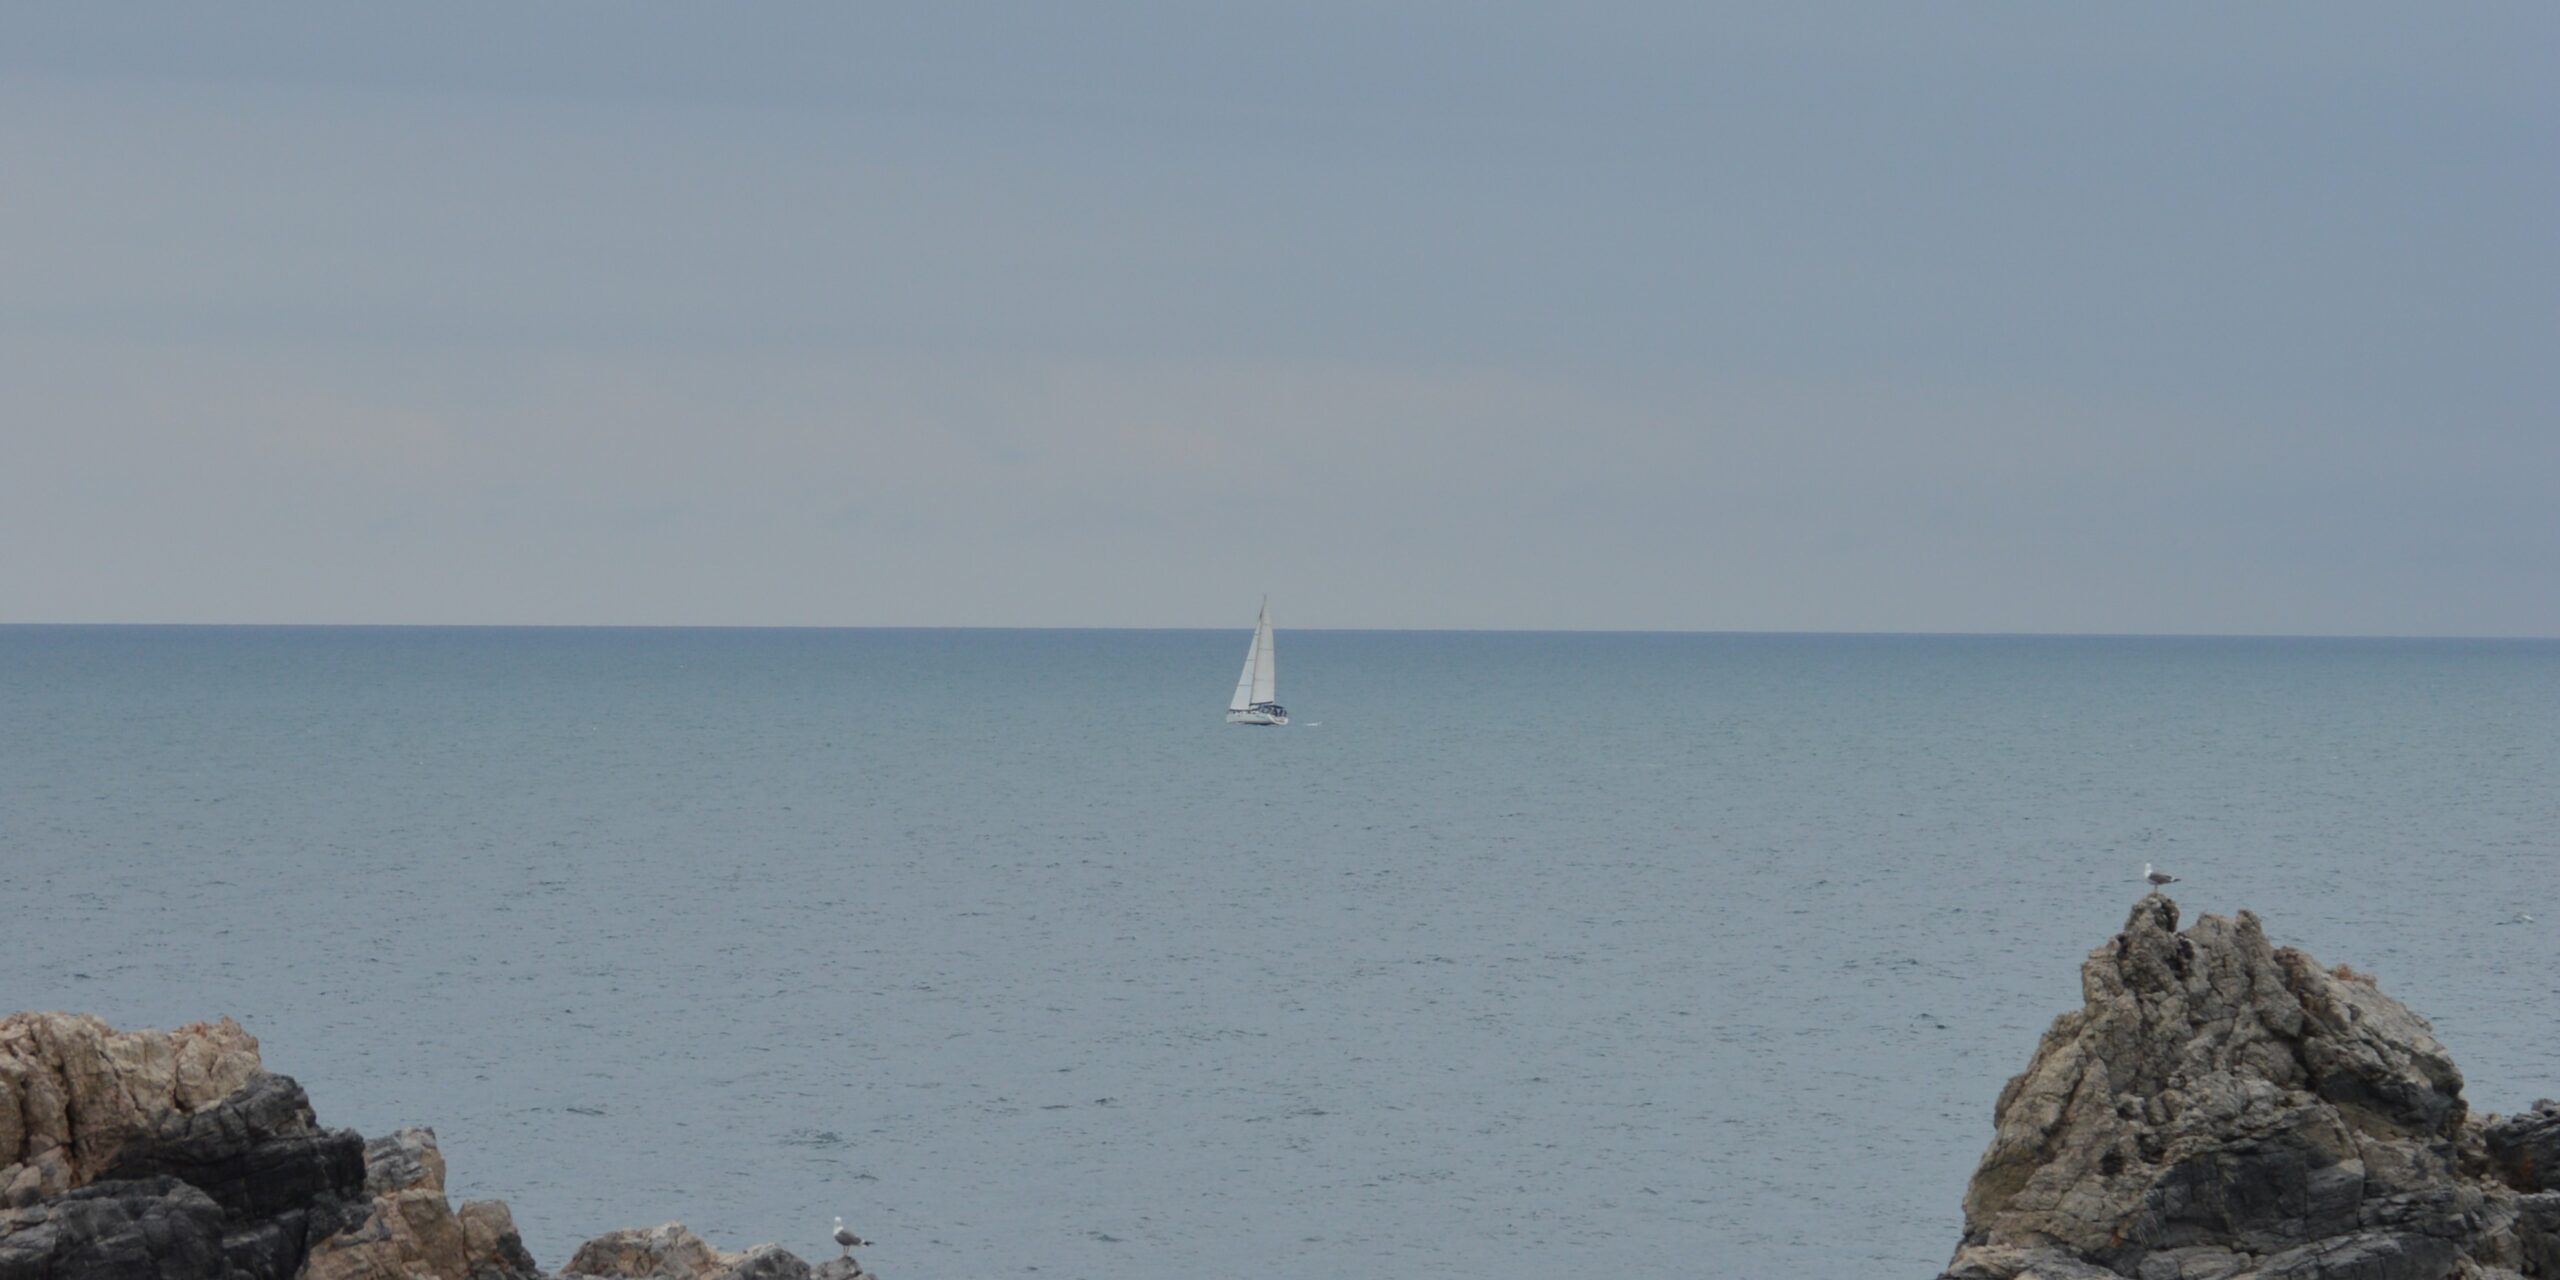 immagine decorariva. Fotografia raffigurante il mare; in lontananza si intravede una vela bianca